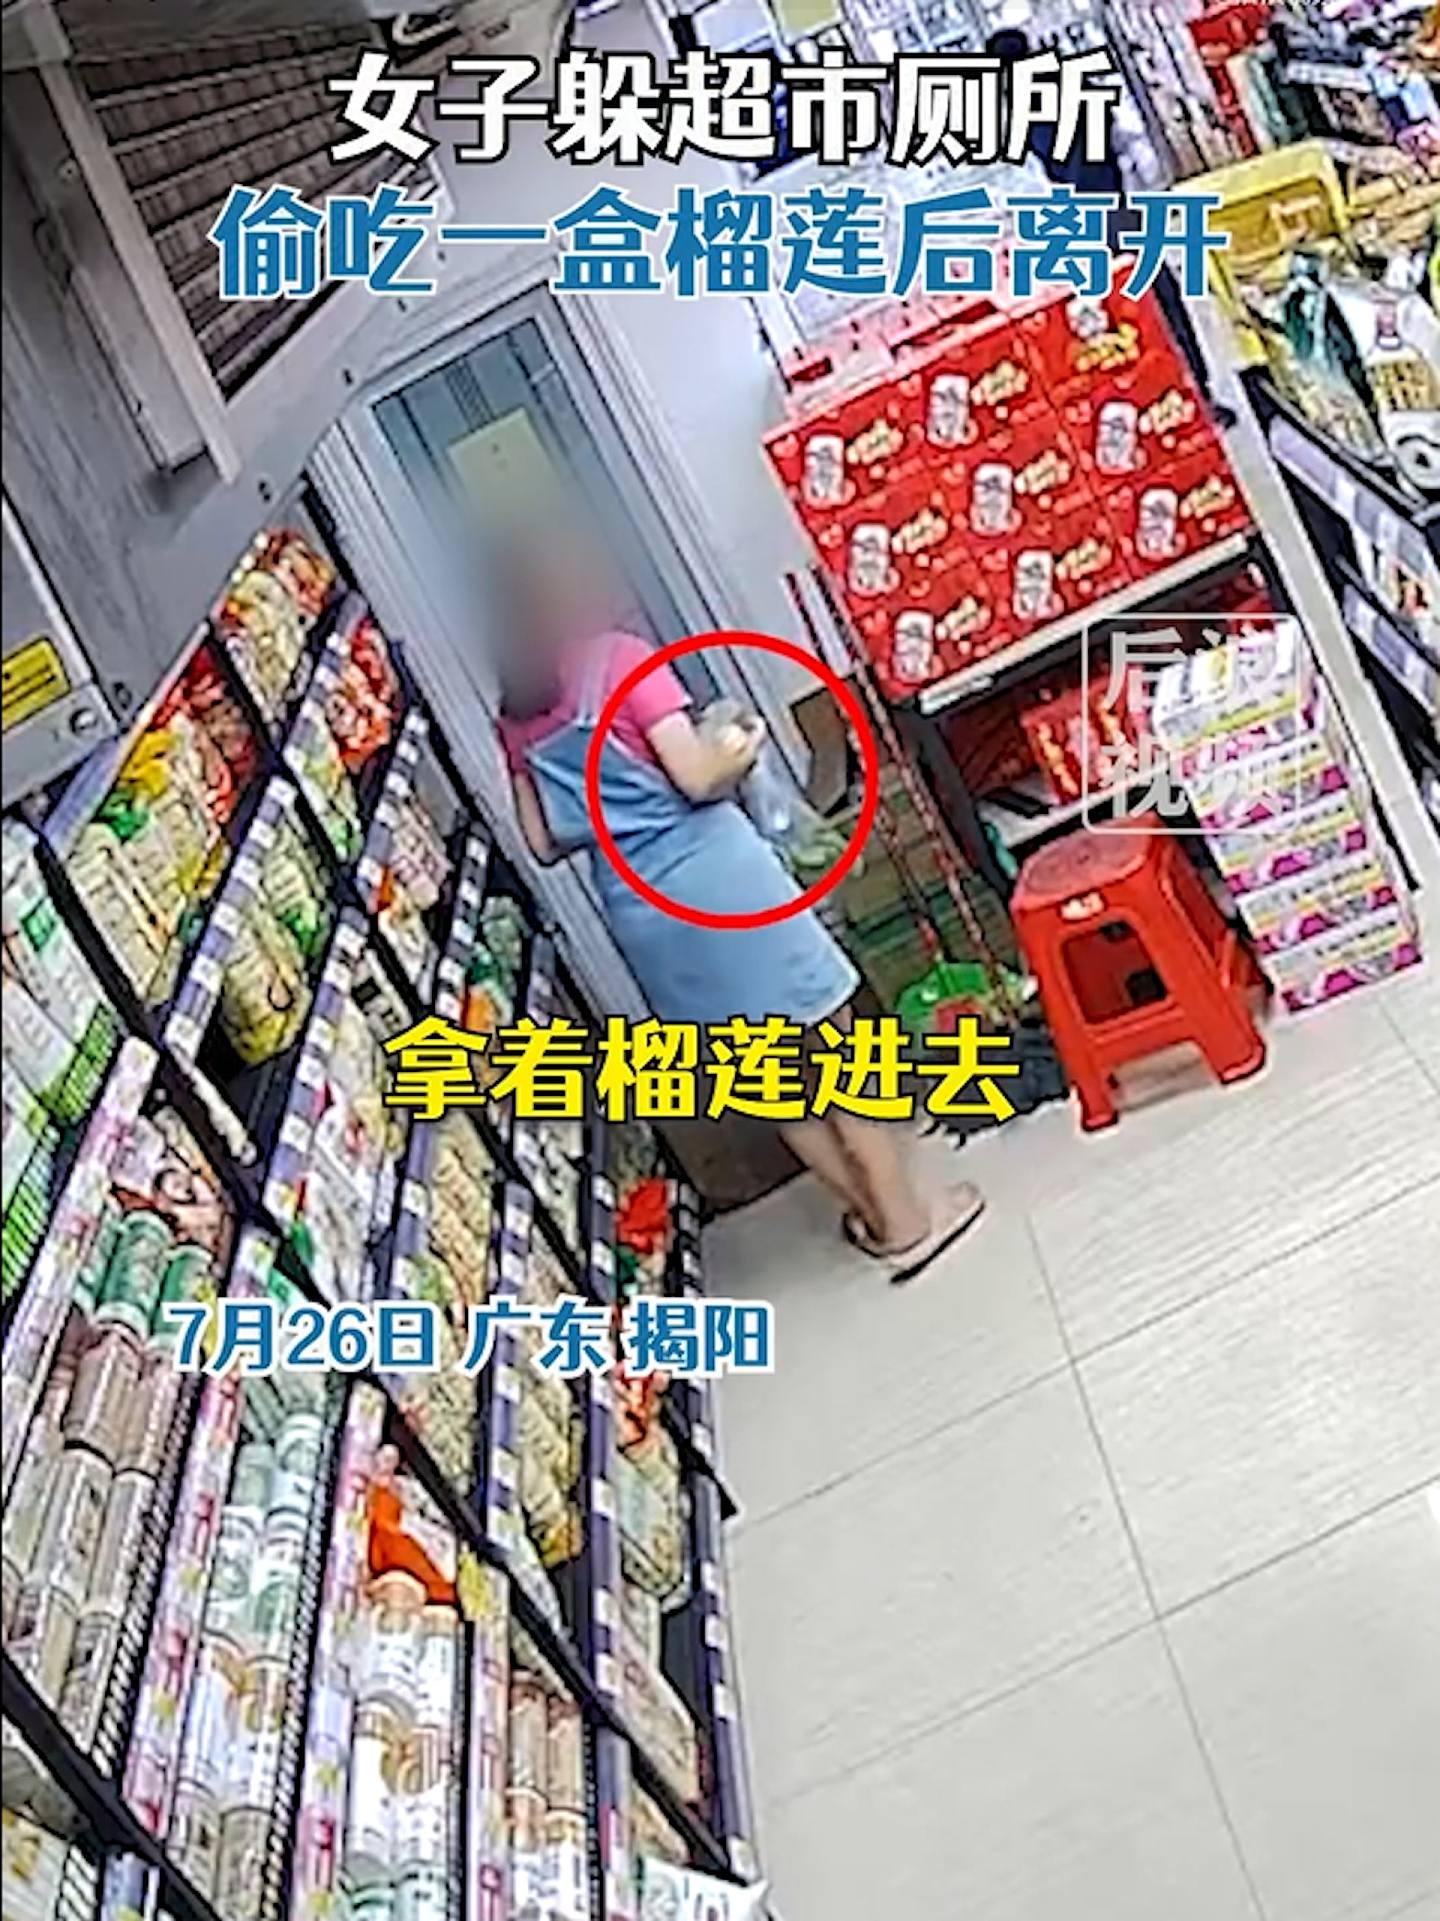 内地1名女子被发现在超市偷取1盒榴梿，但没有立即离去，而是走进店内的厕所进食。 （影片截图）